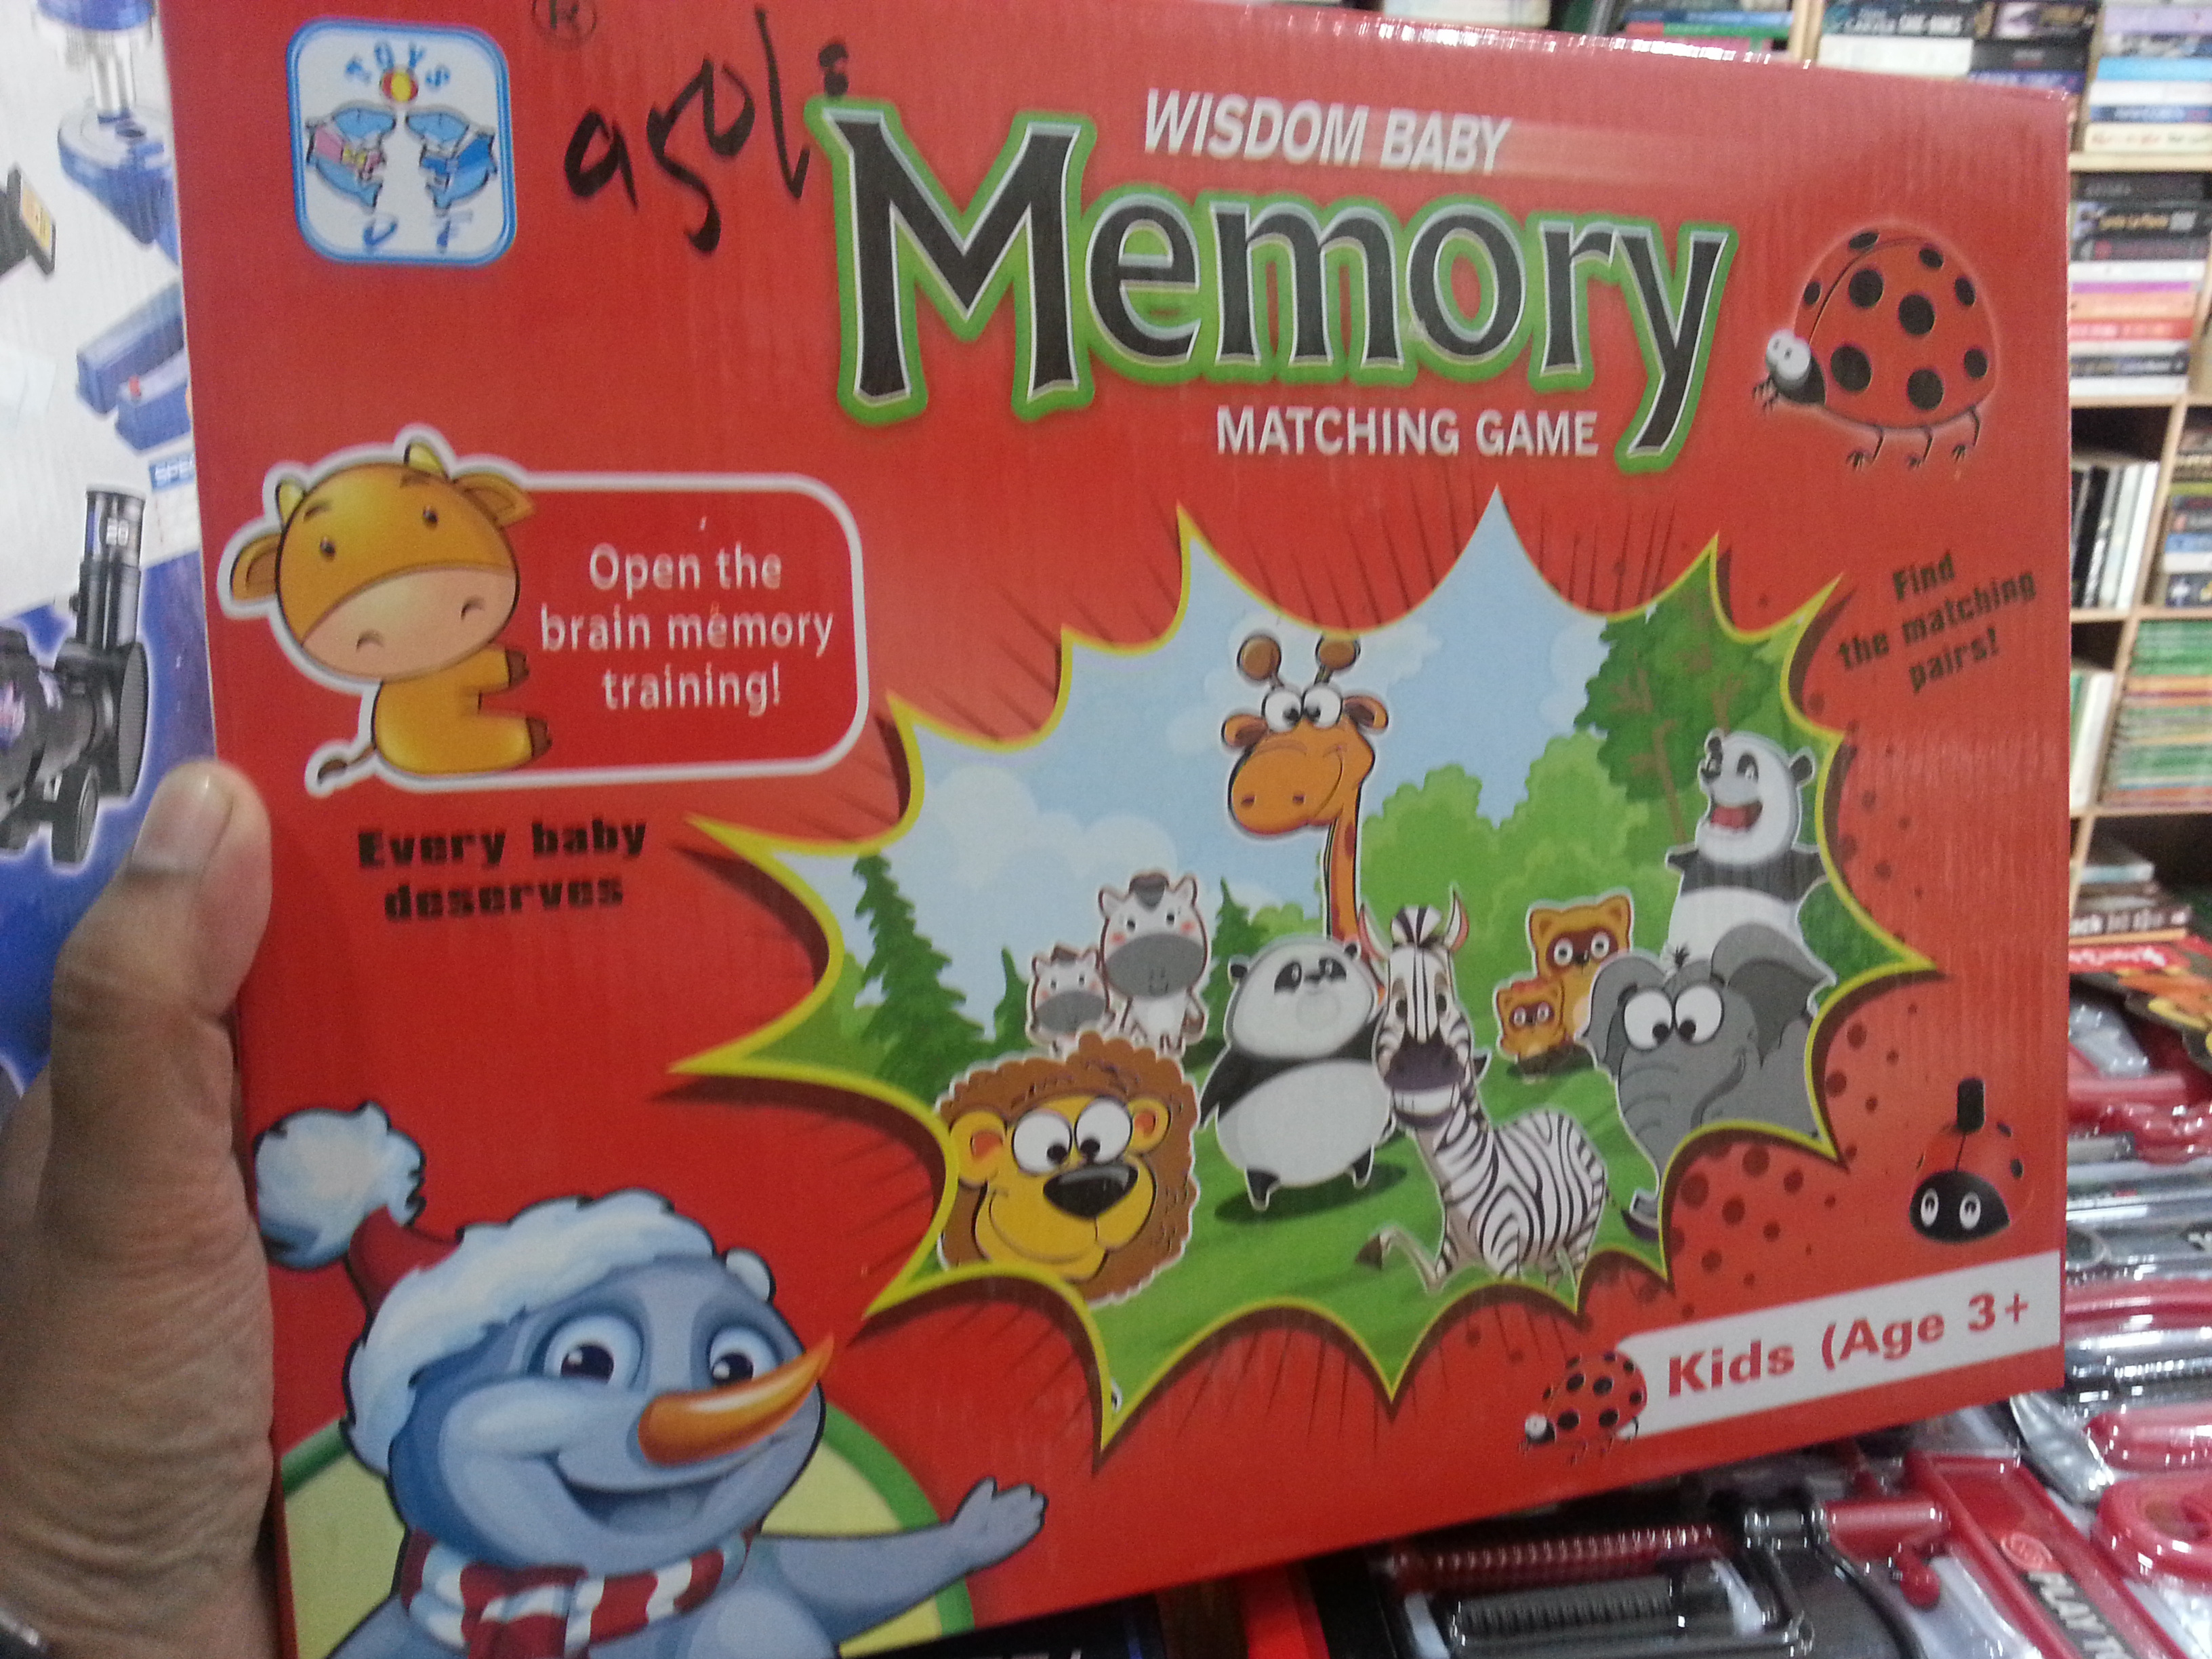 MEMORY MATCHING GAME
